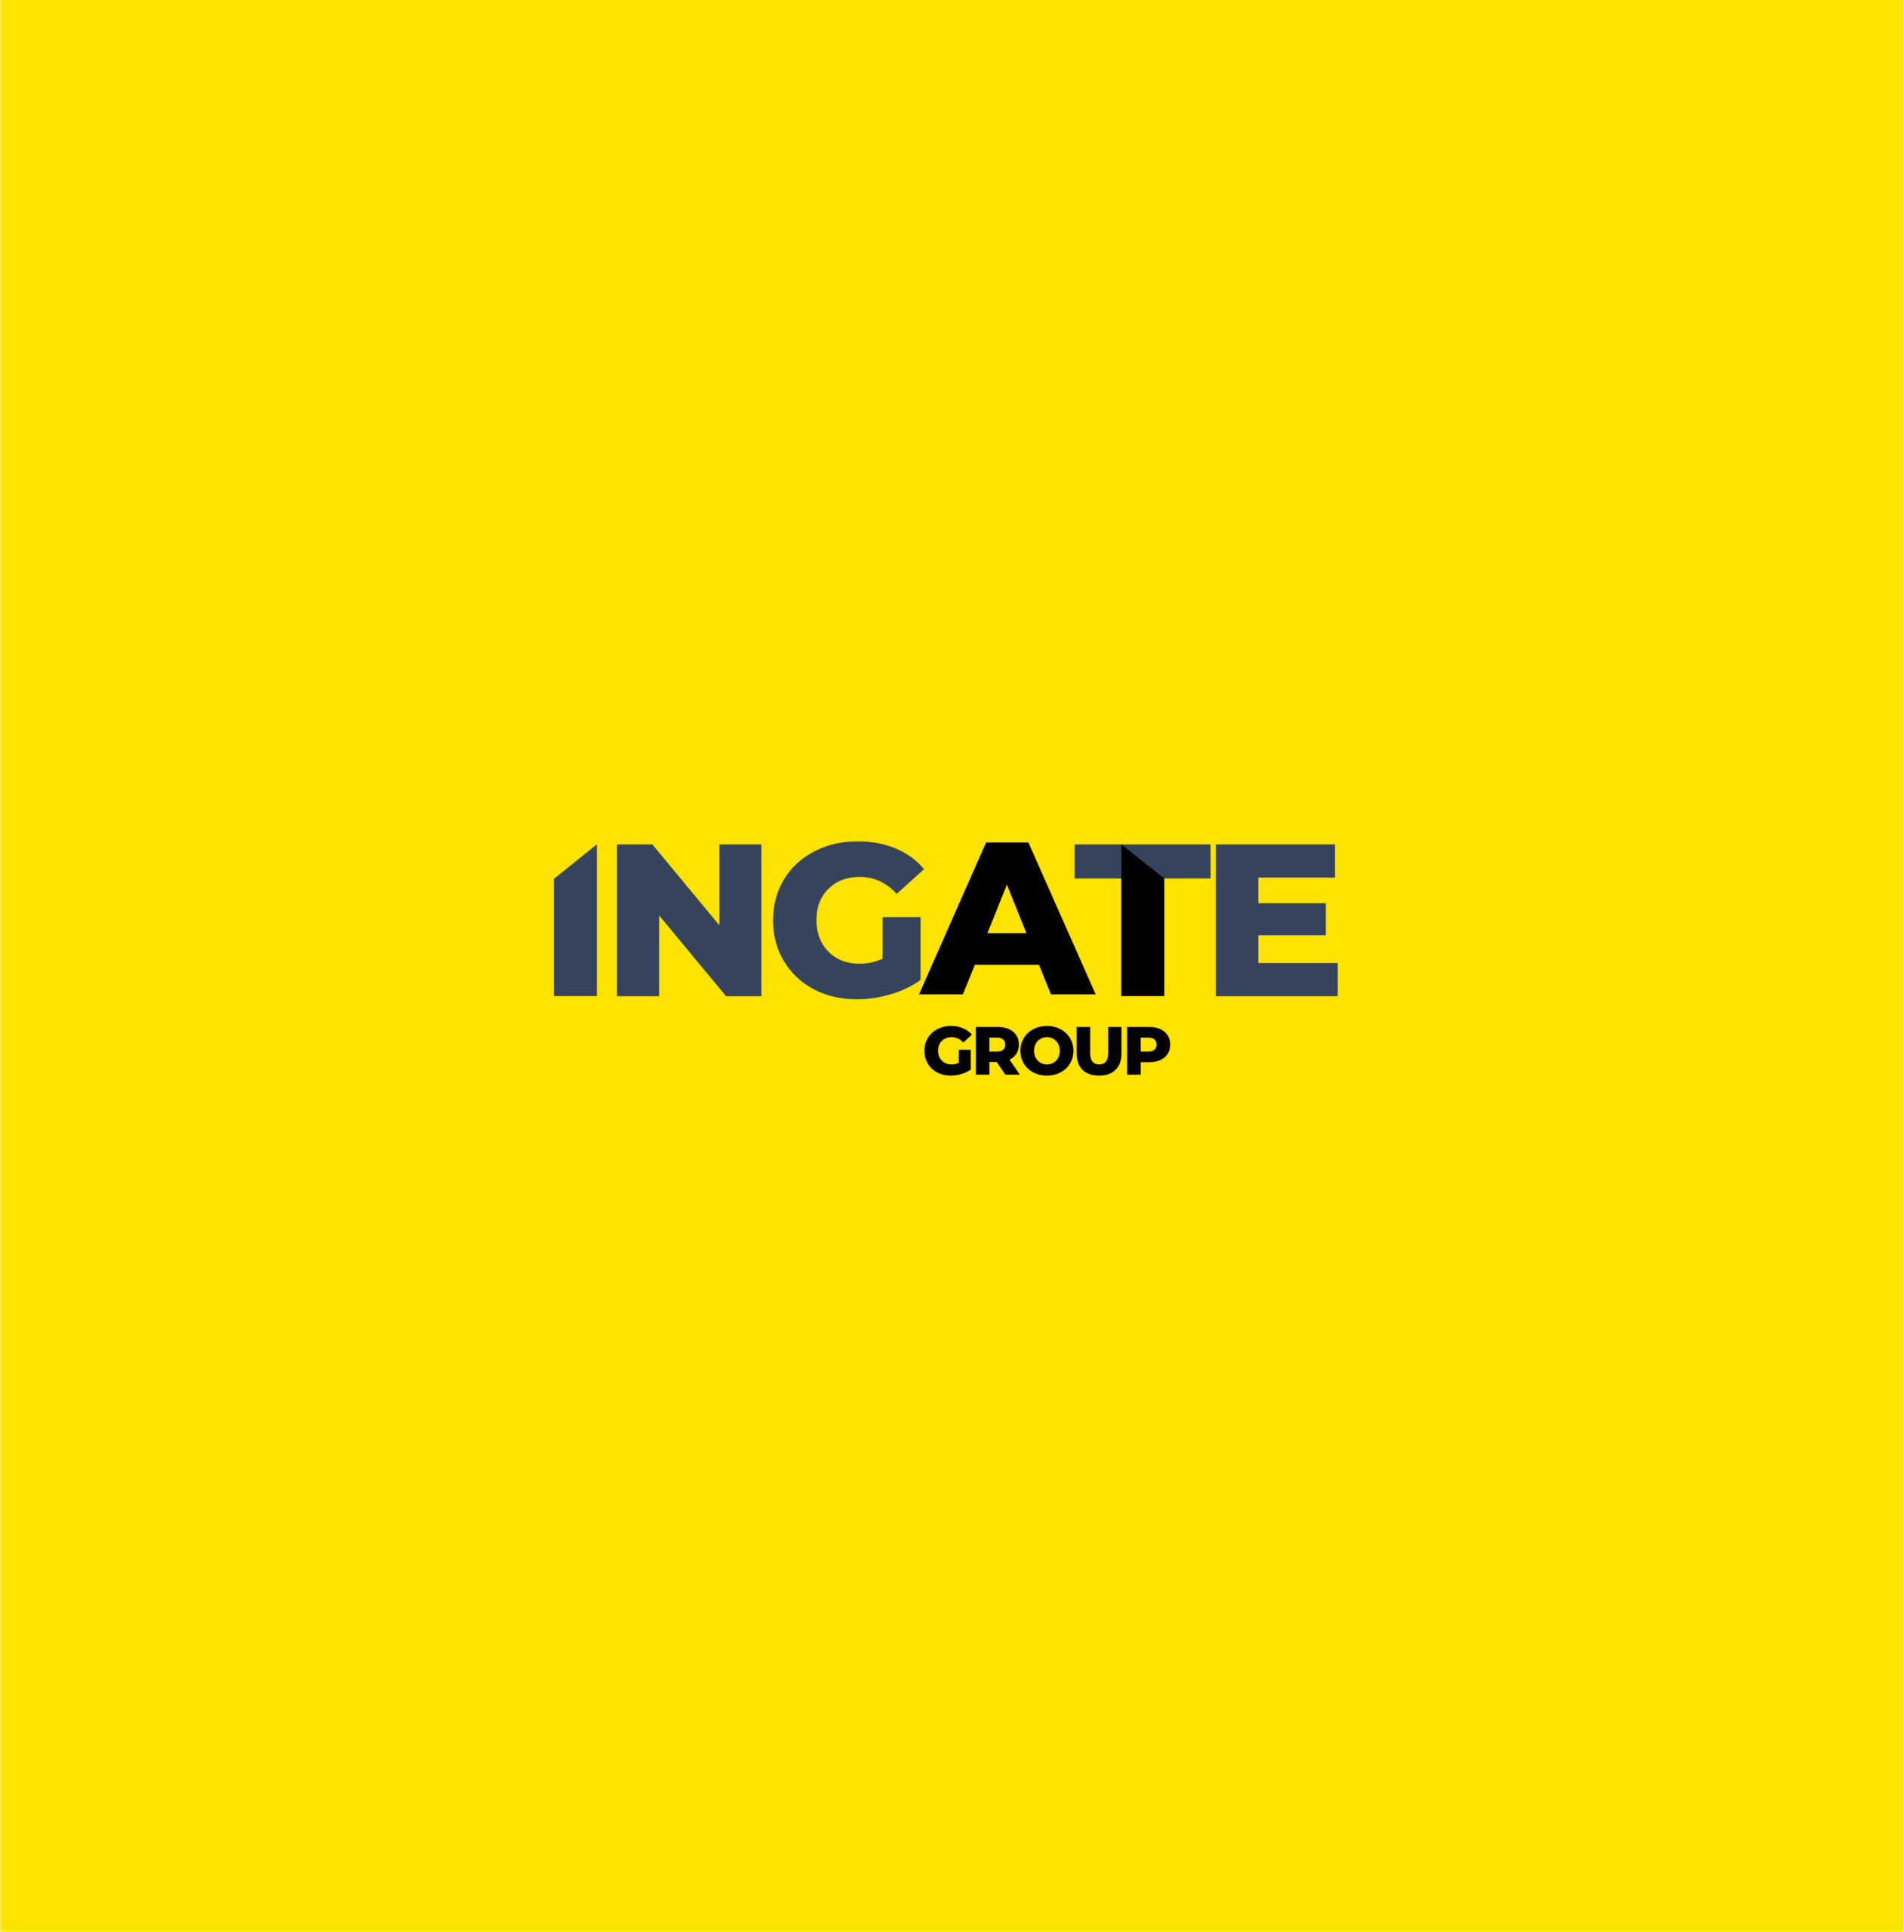 INGATE group